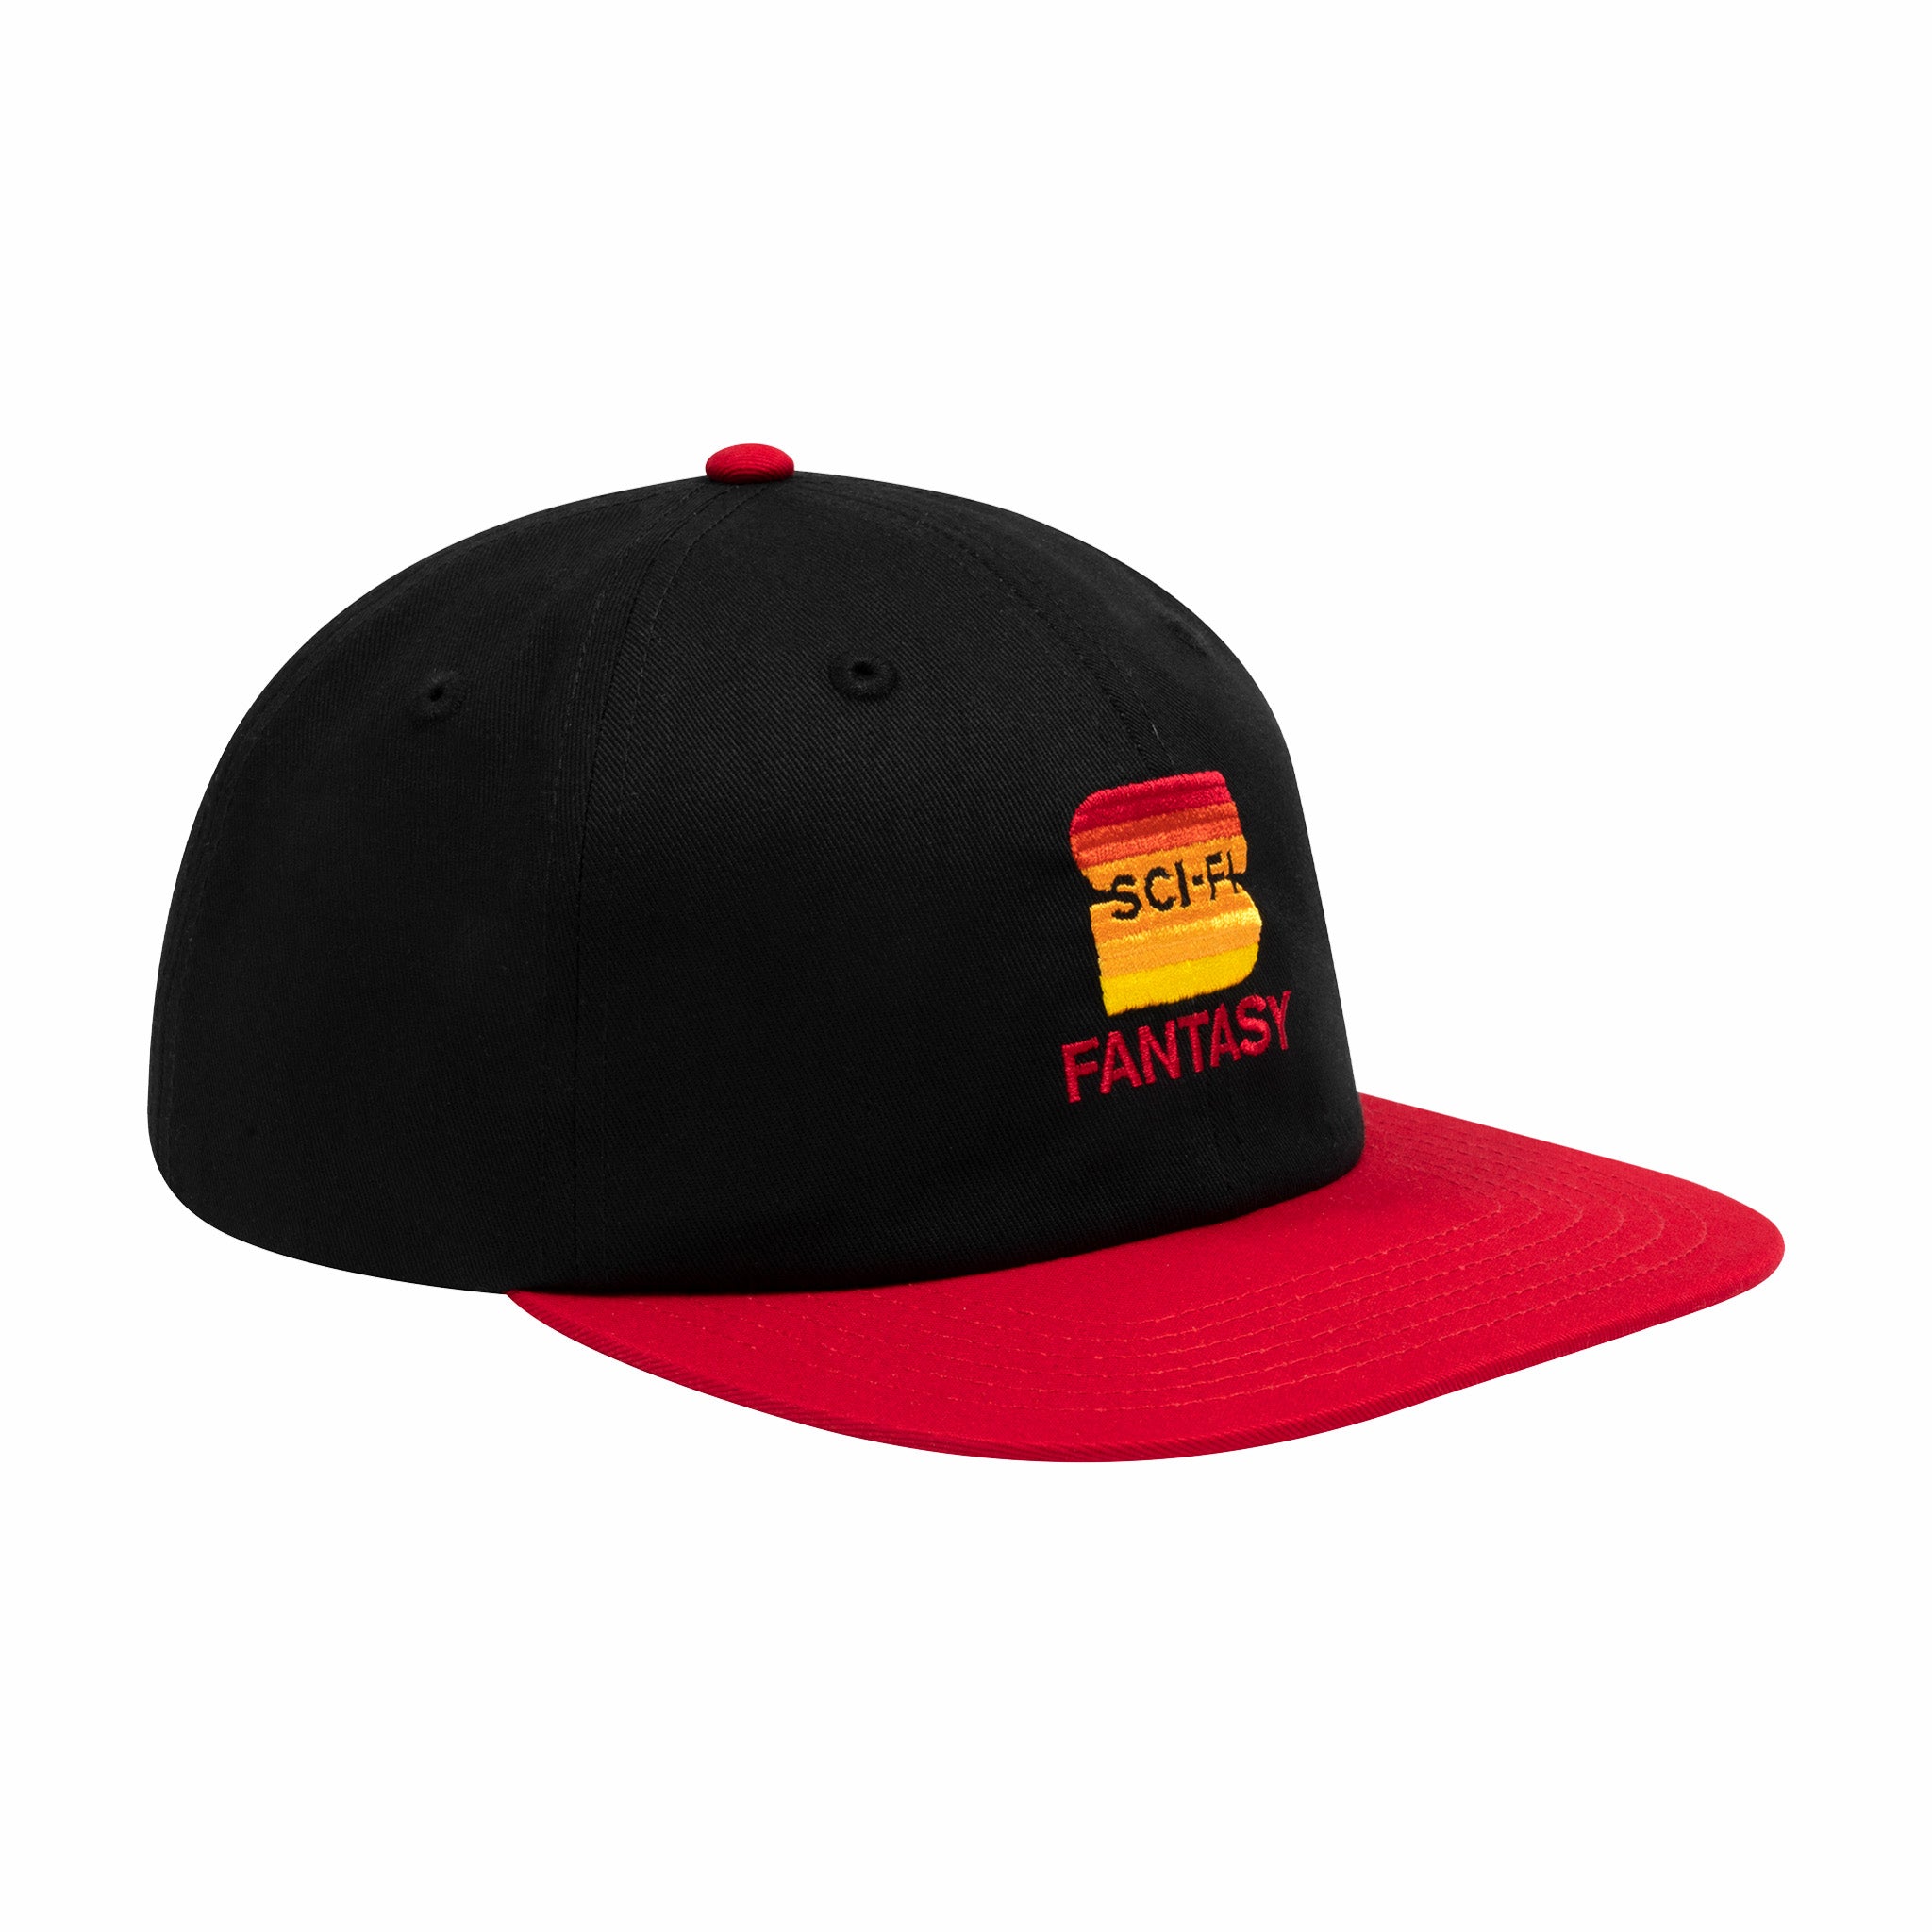 Sci-Fi Fantasy &quot;S&quot; Hat (Black/Red) - August Shop